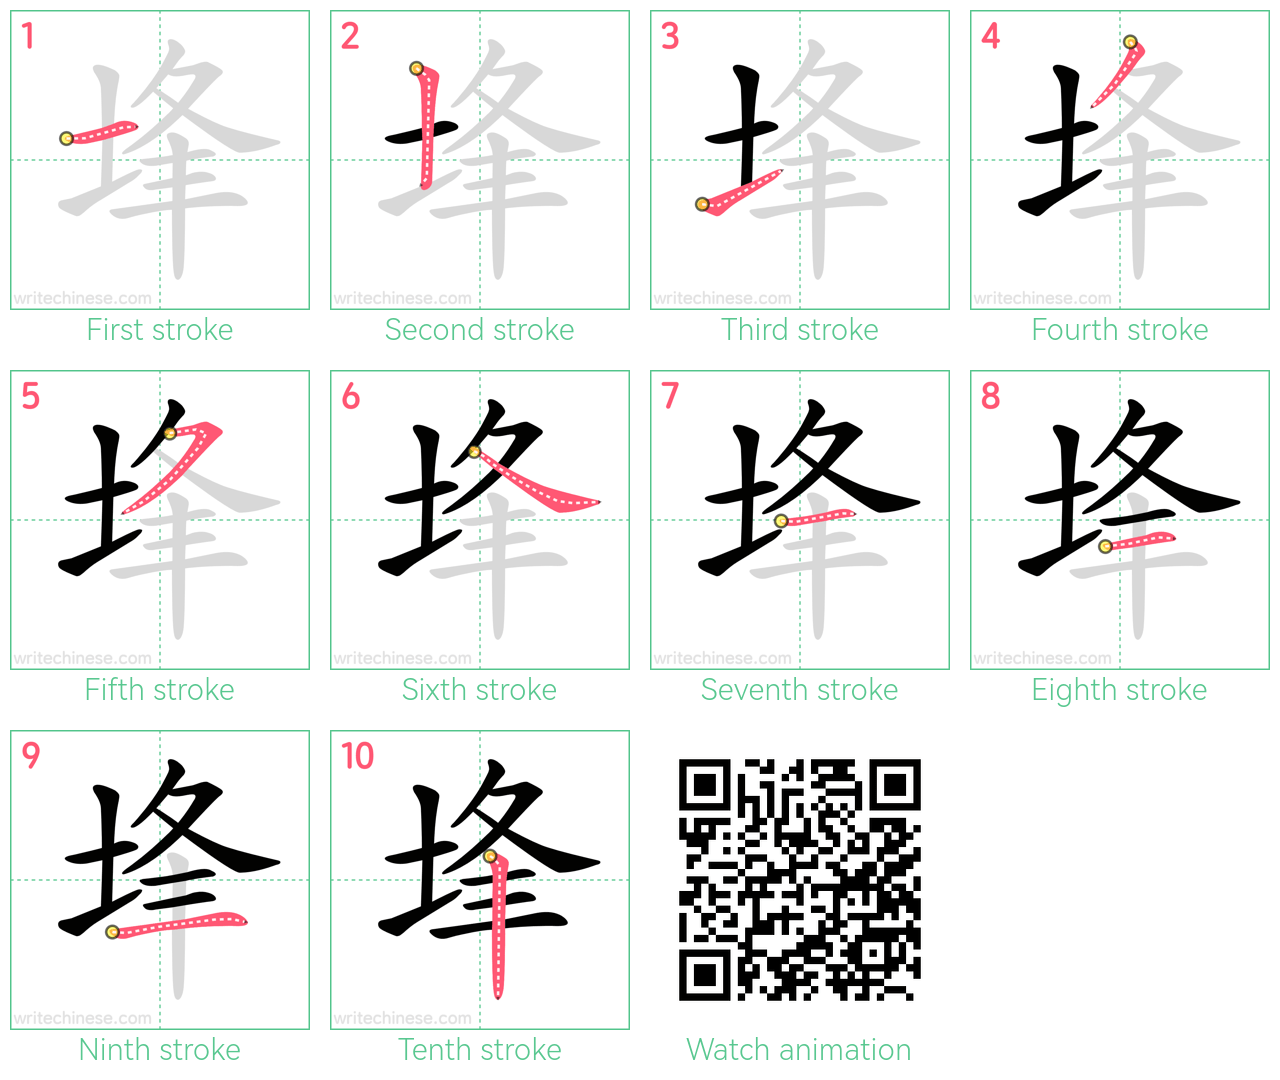 埄 step-by-step stroke order diagrams